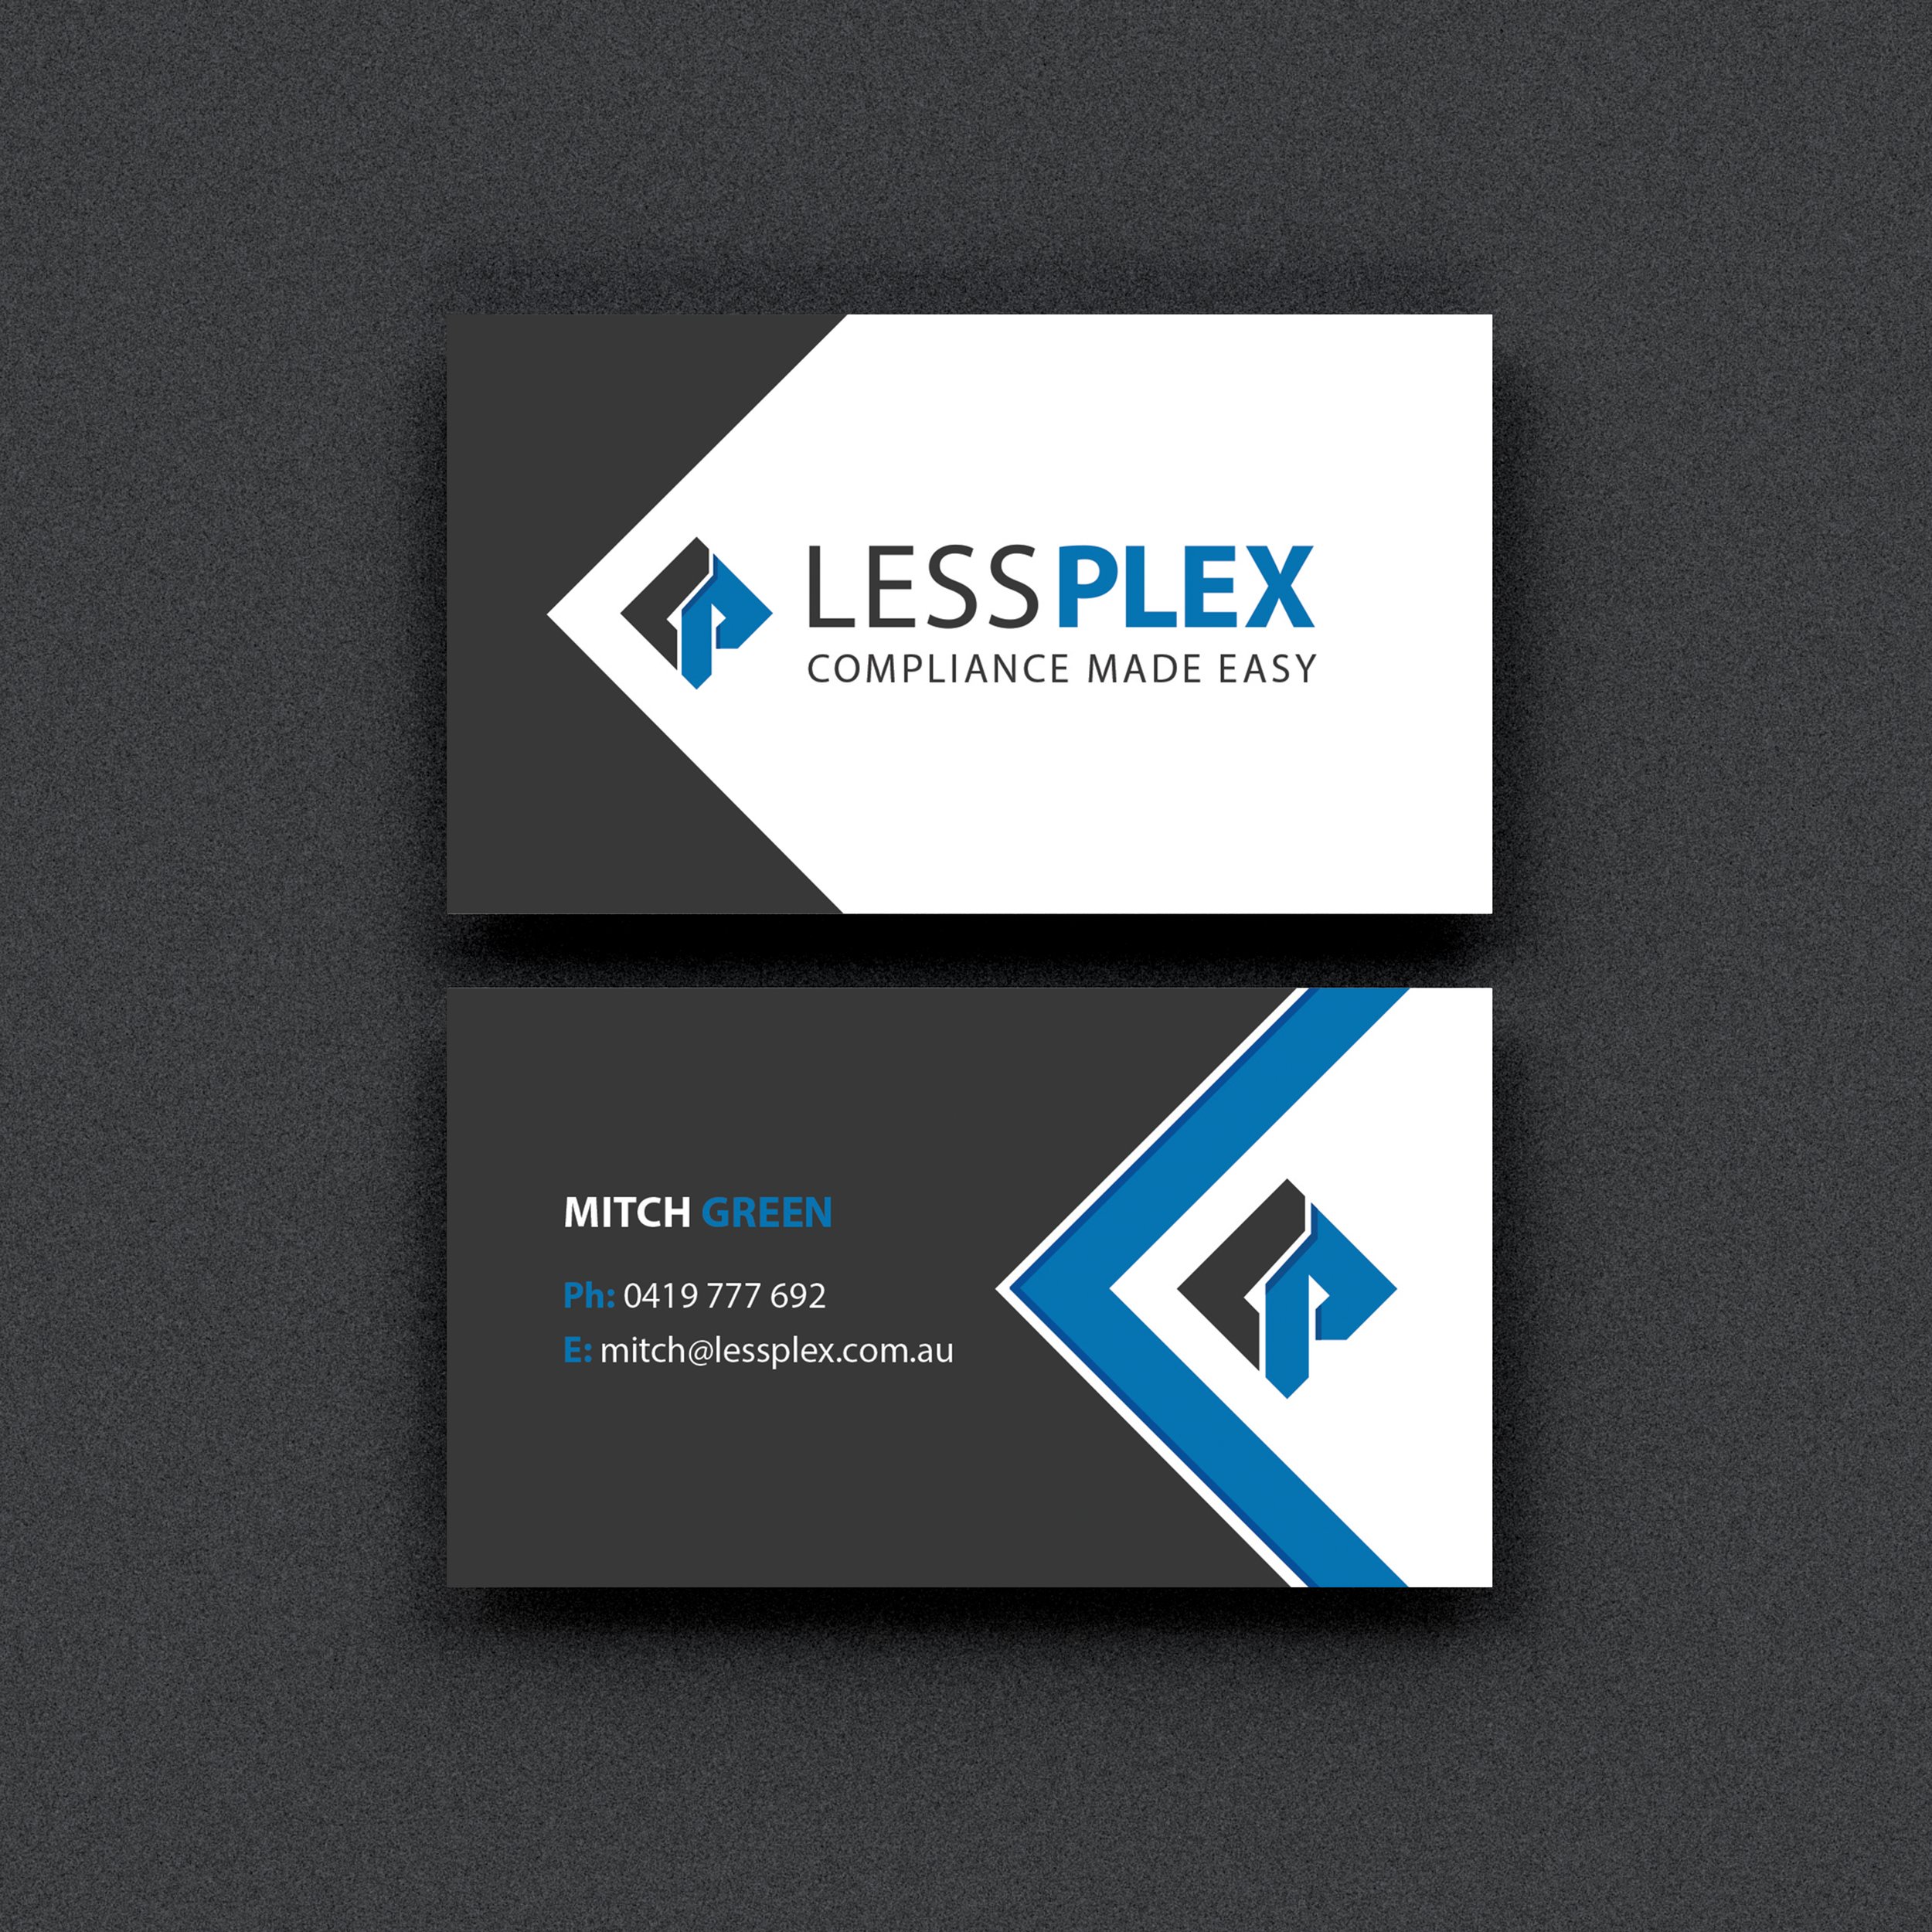 Less Plex mockup.jpg